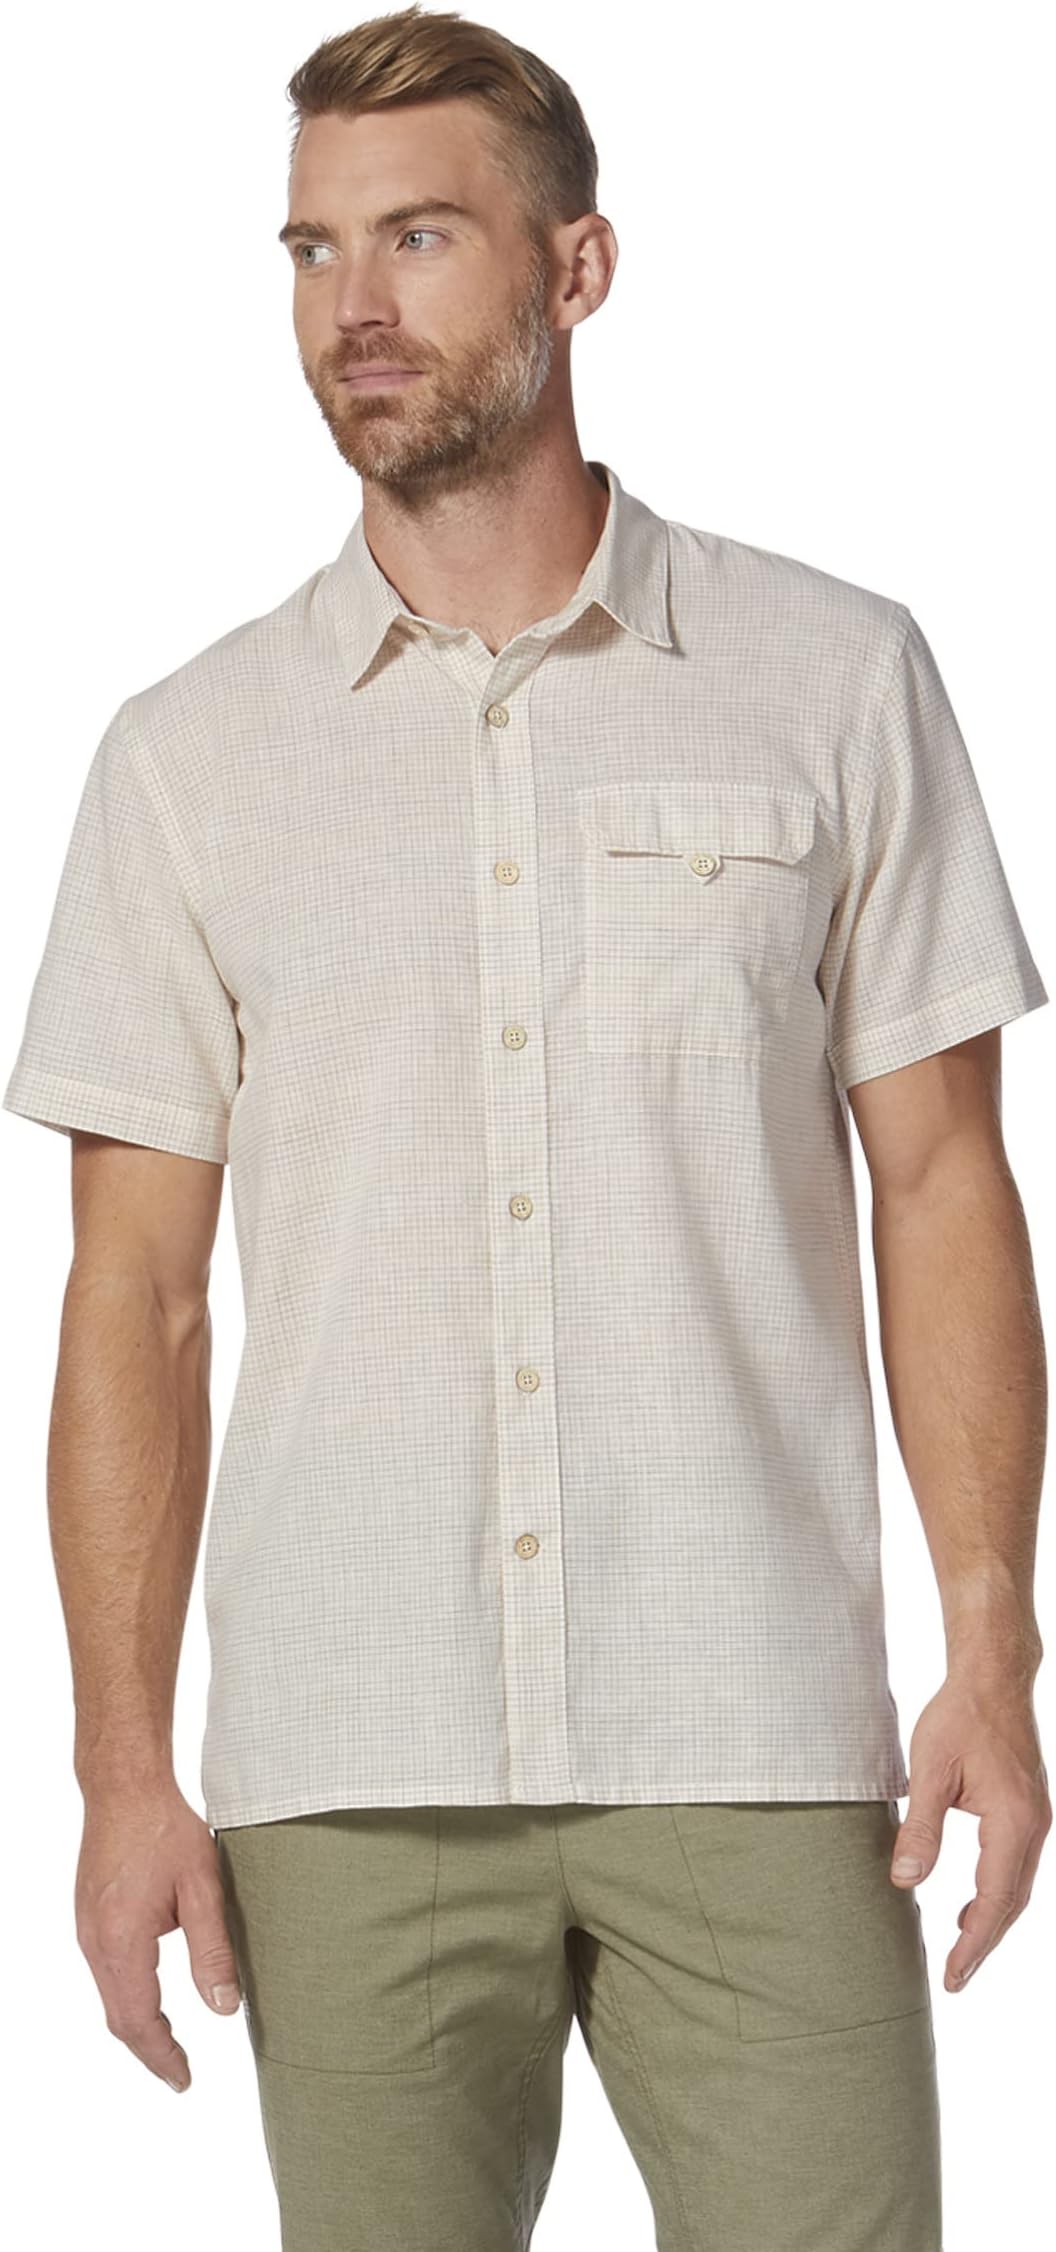 Рубашка Hempline Spaced Short Sleeve Royal Robbins, цвет Blended Undyed цена и фото